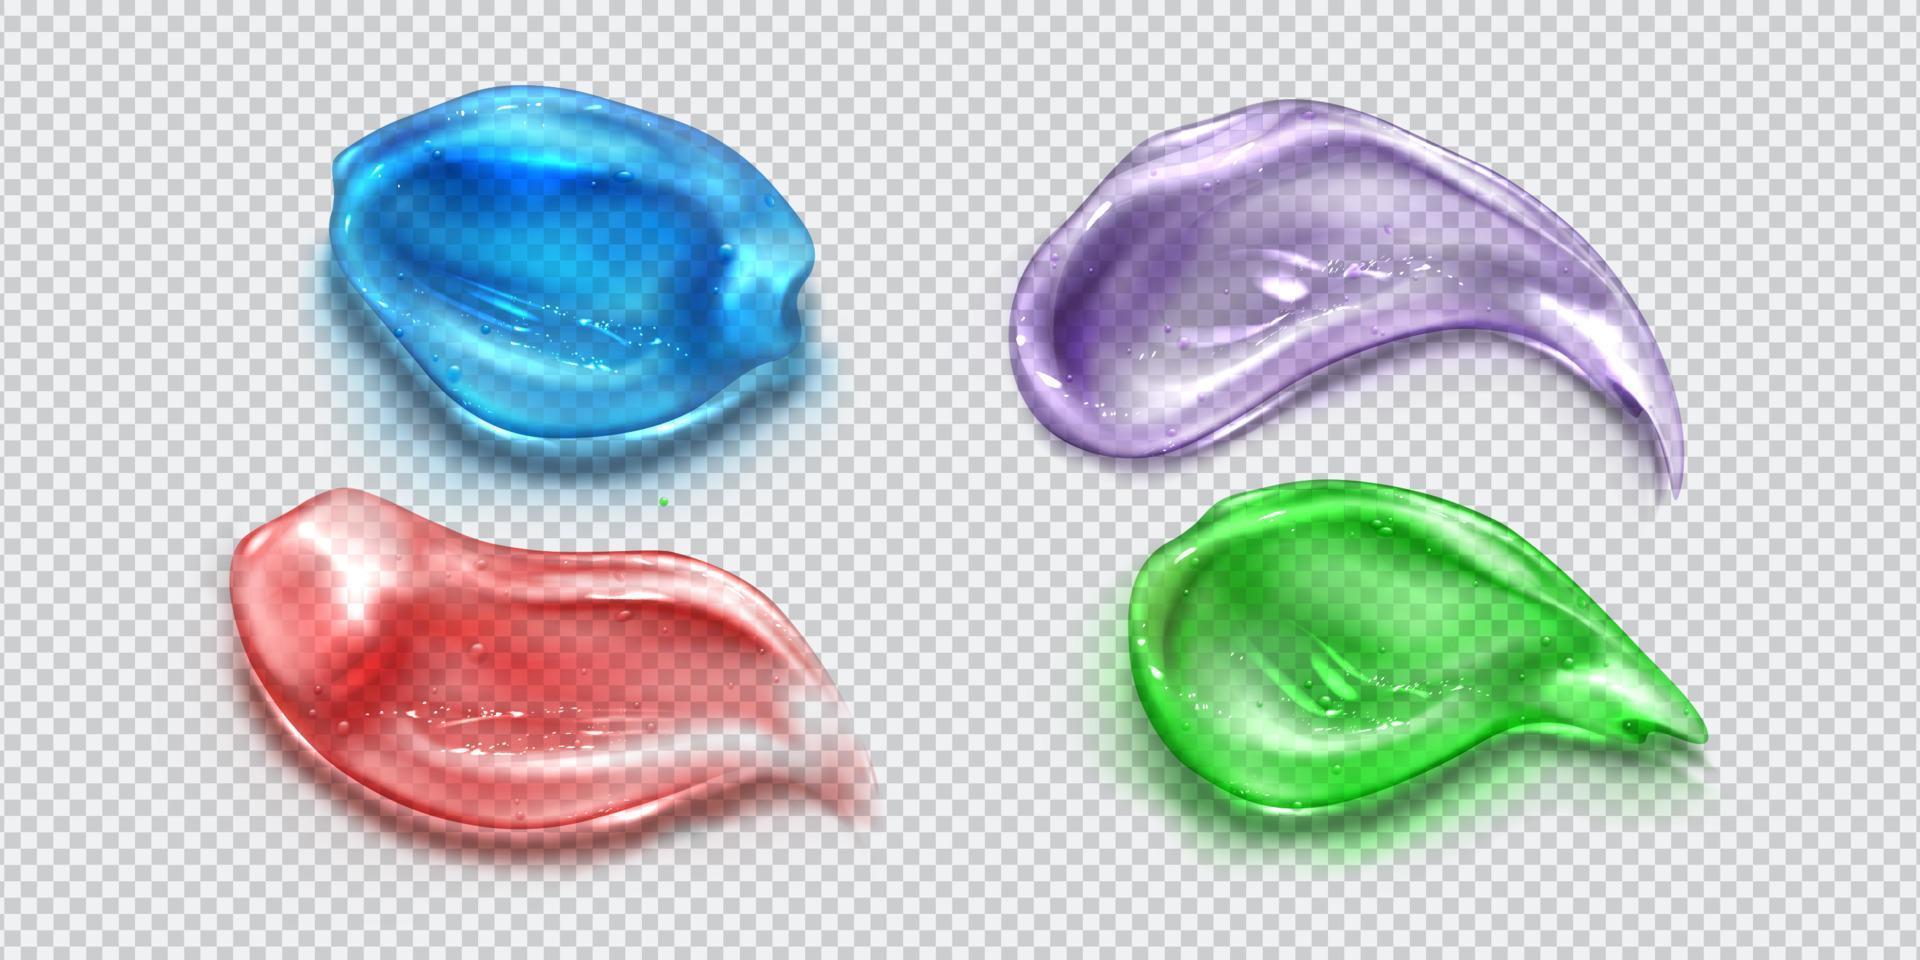 burbujas de frotis de gel, trazos de colores transparentes vector